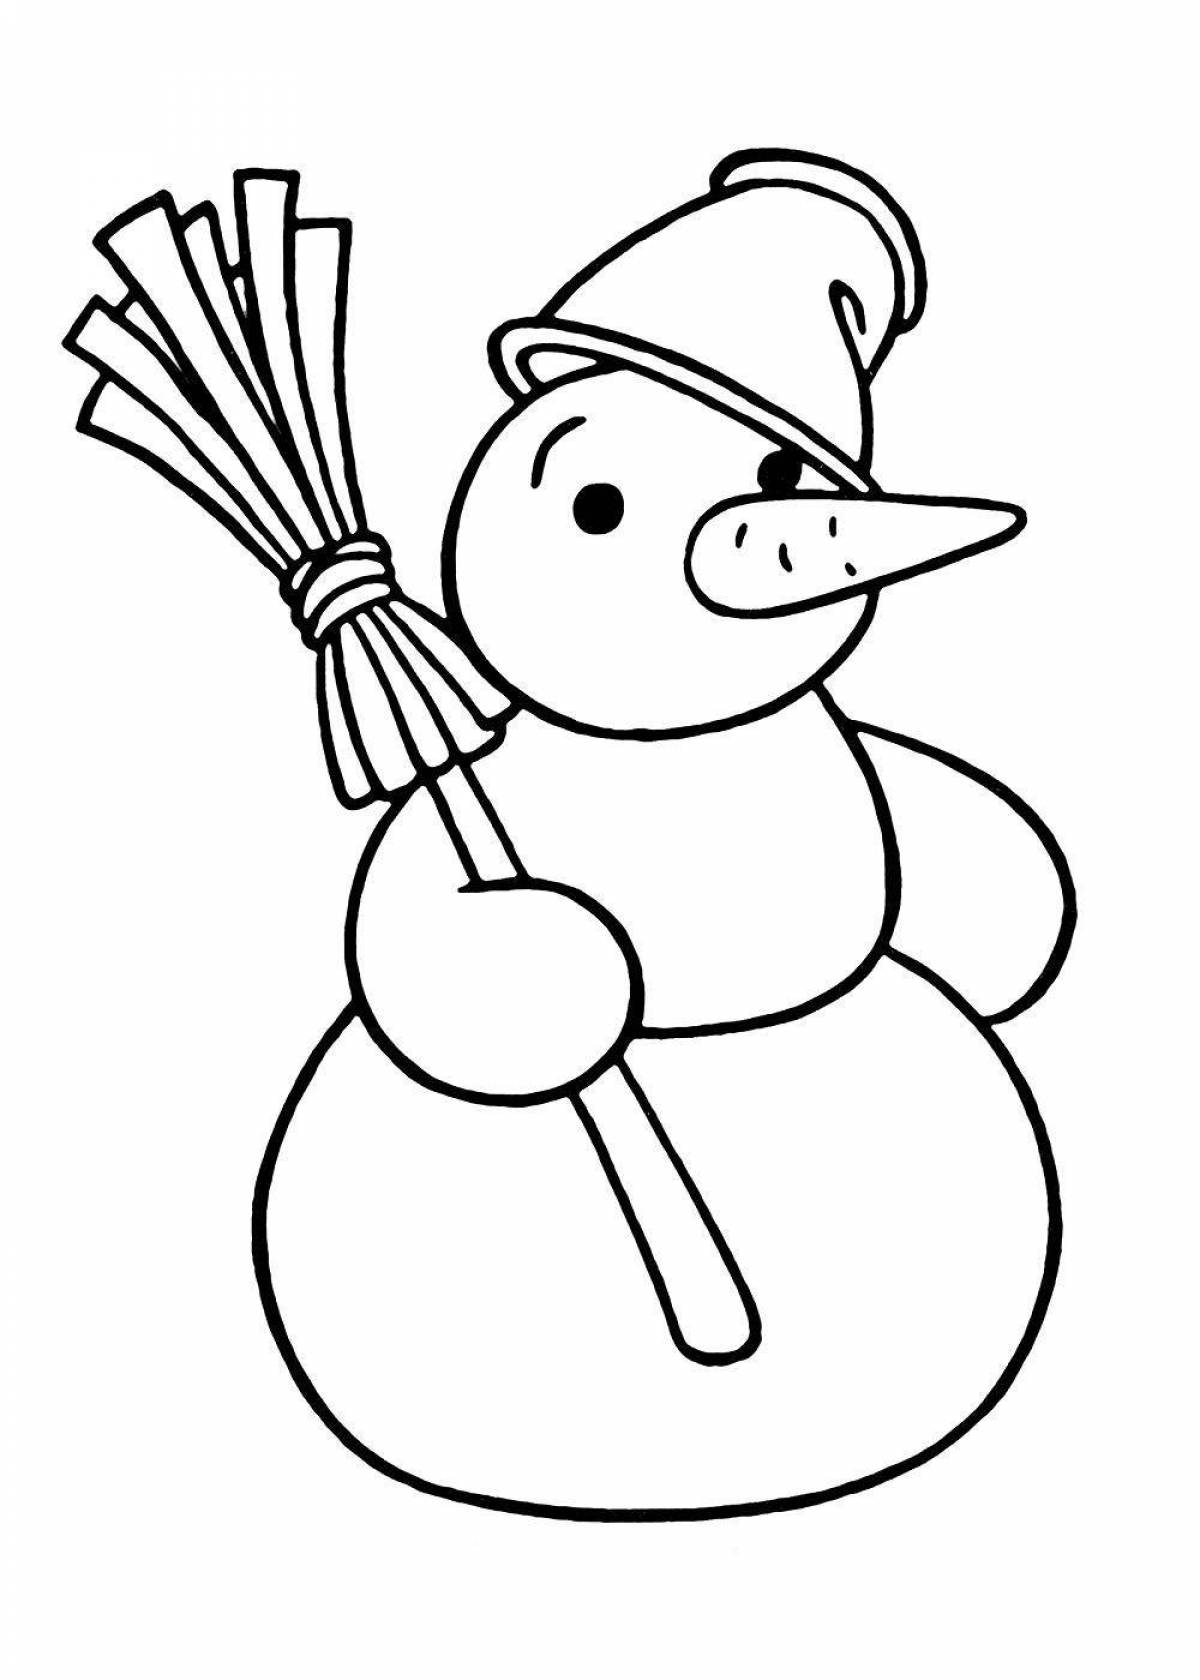 Сверкающая раскраска снеговик для детей 4-5 лет